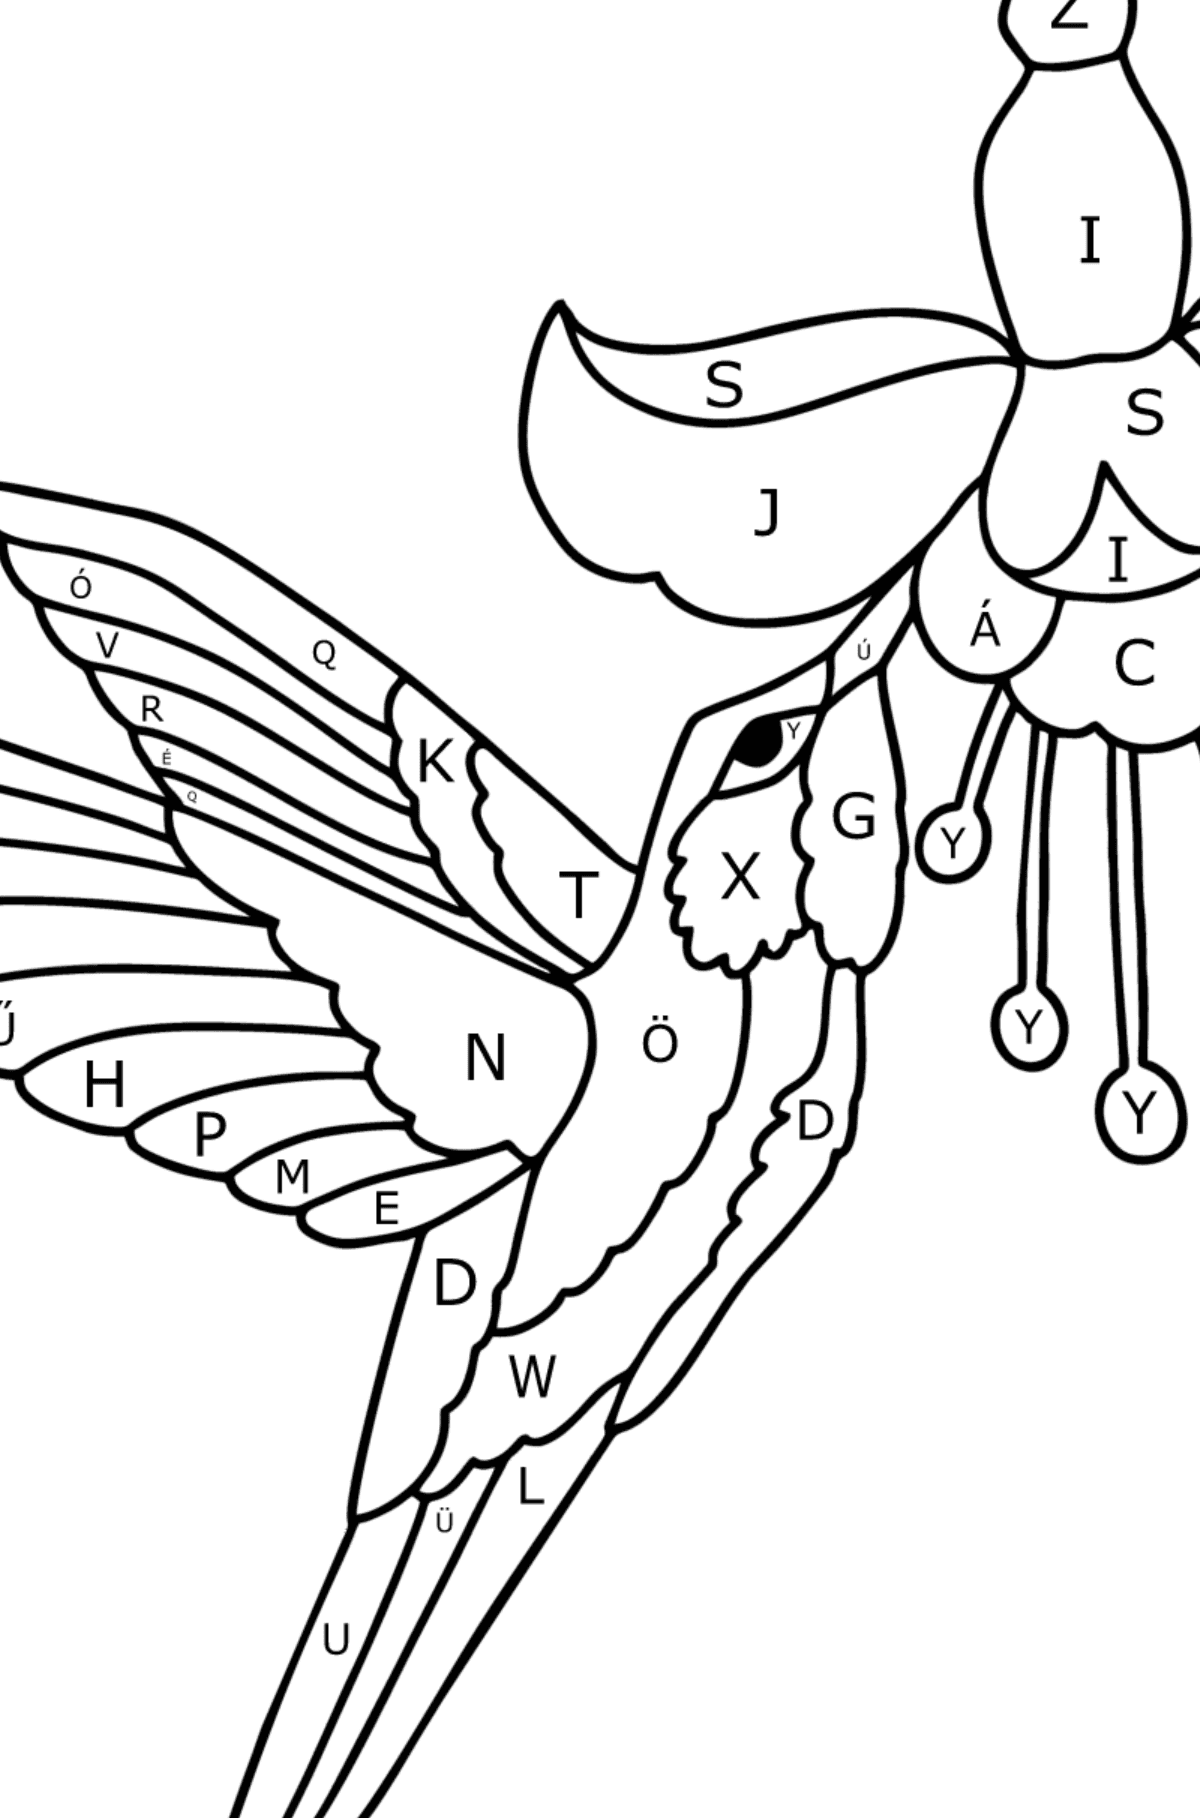 Kolibri dzsungel kifestő - Színezés betű szerint gyerekeknek